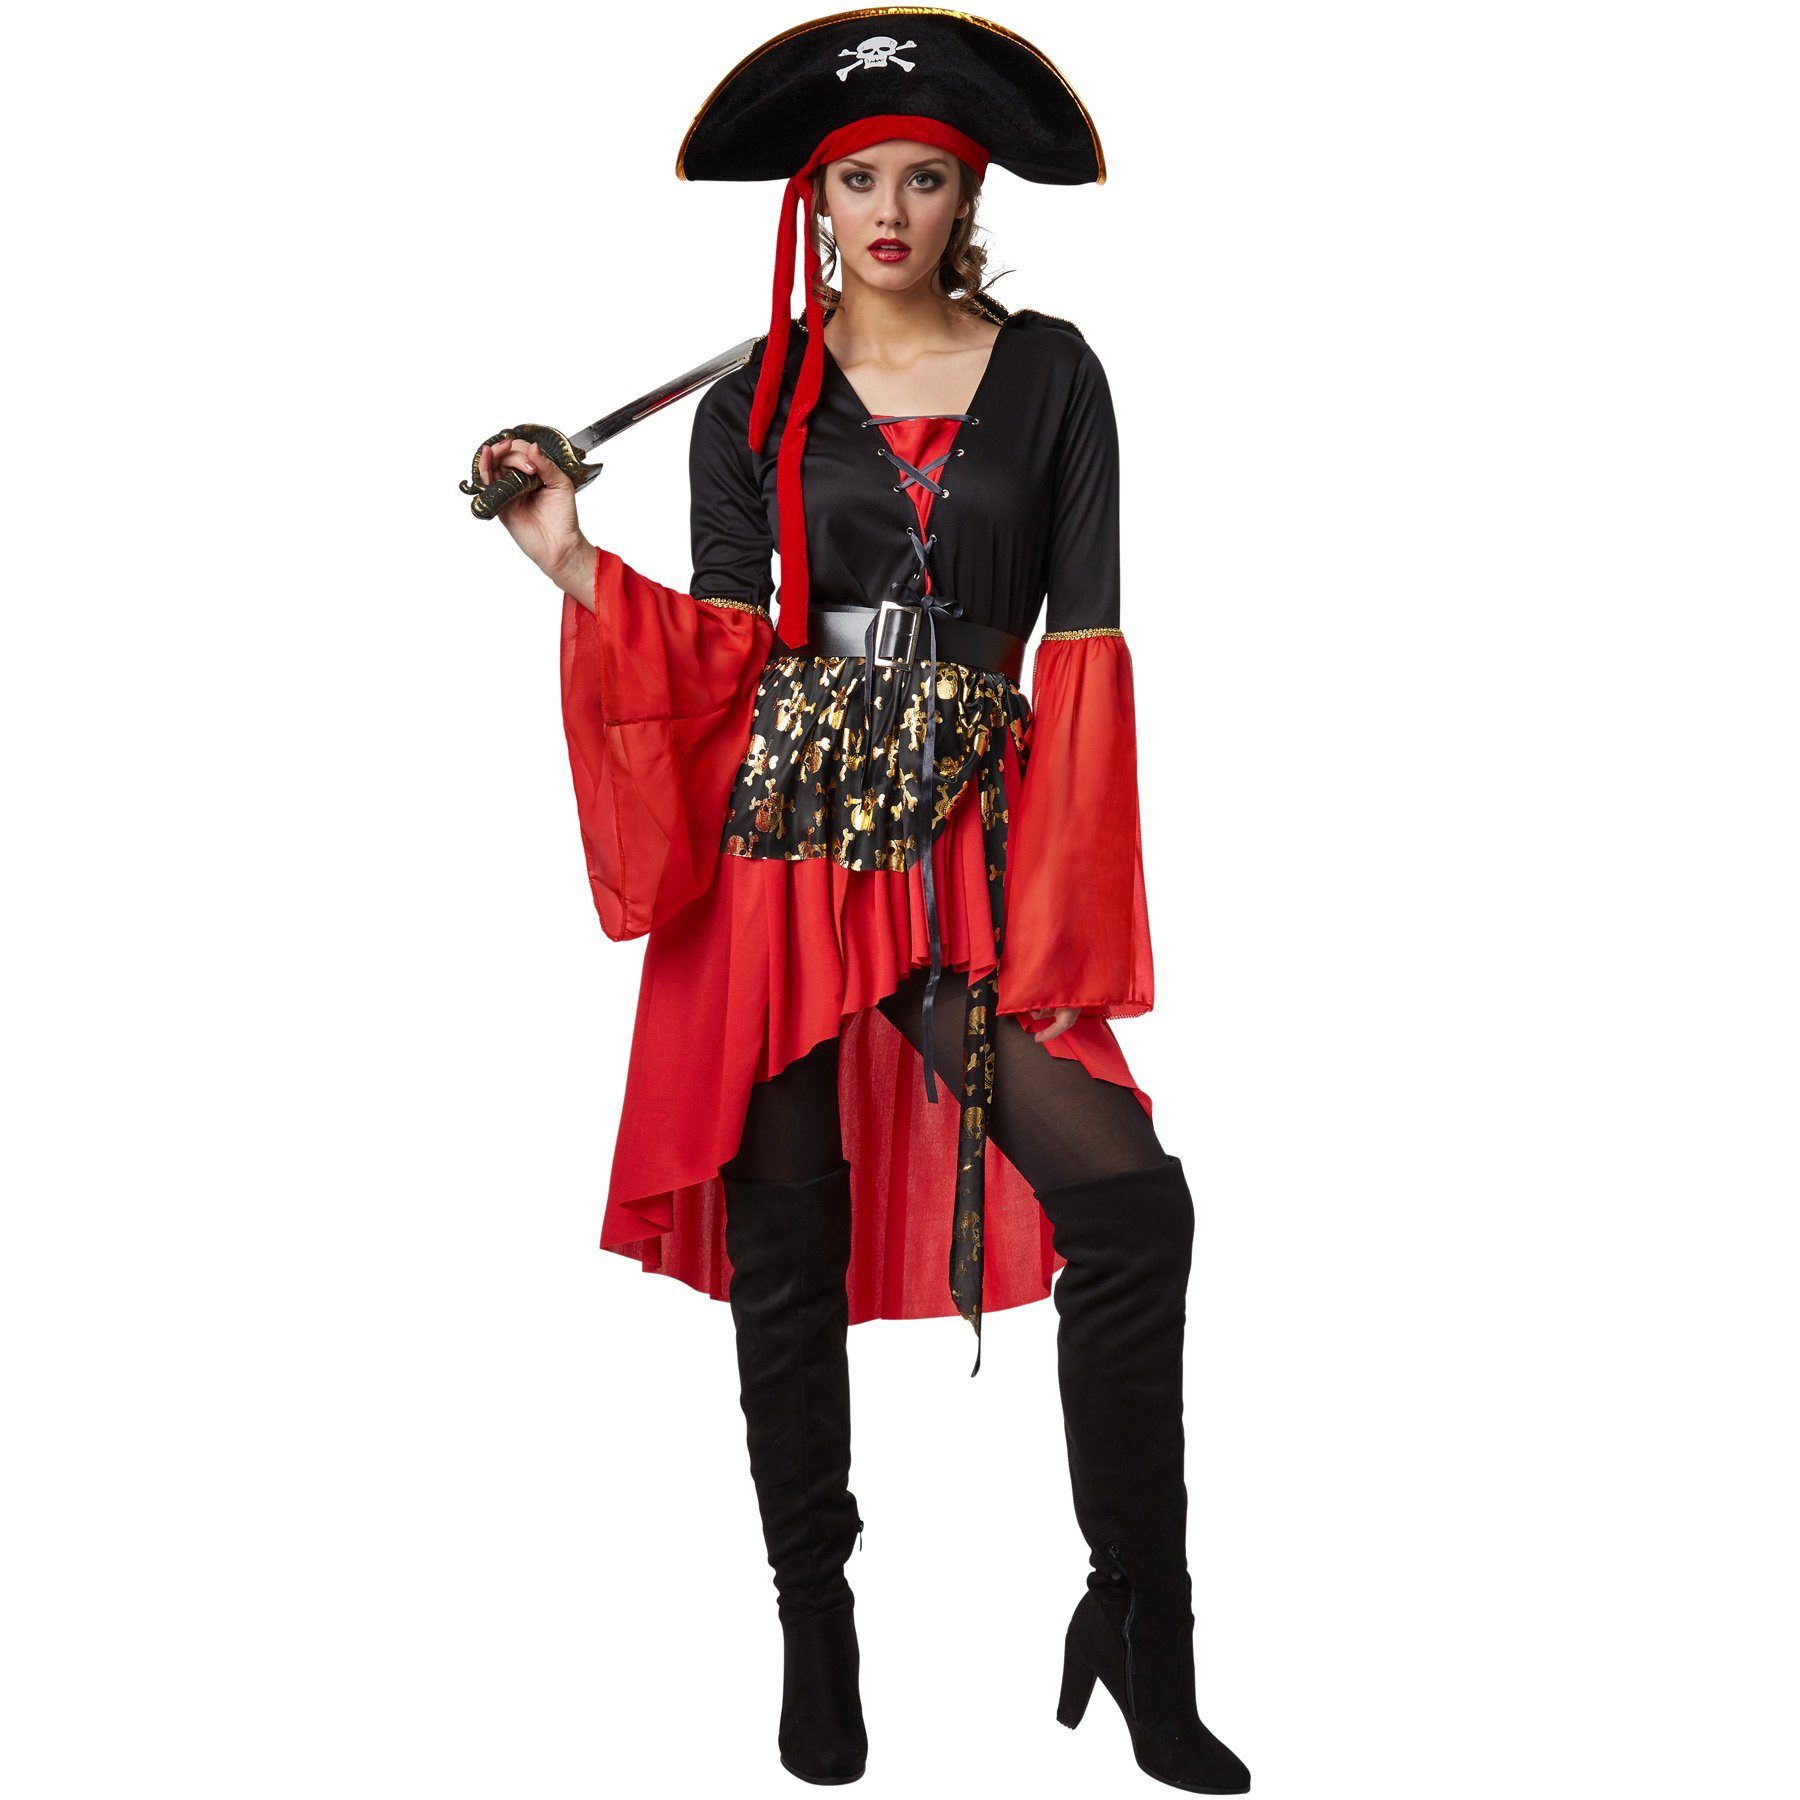 Piraten Kostüm für Herren - Seeräuber Kollektion. 24h Versand